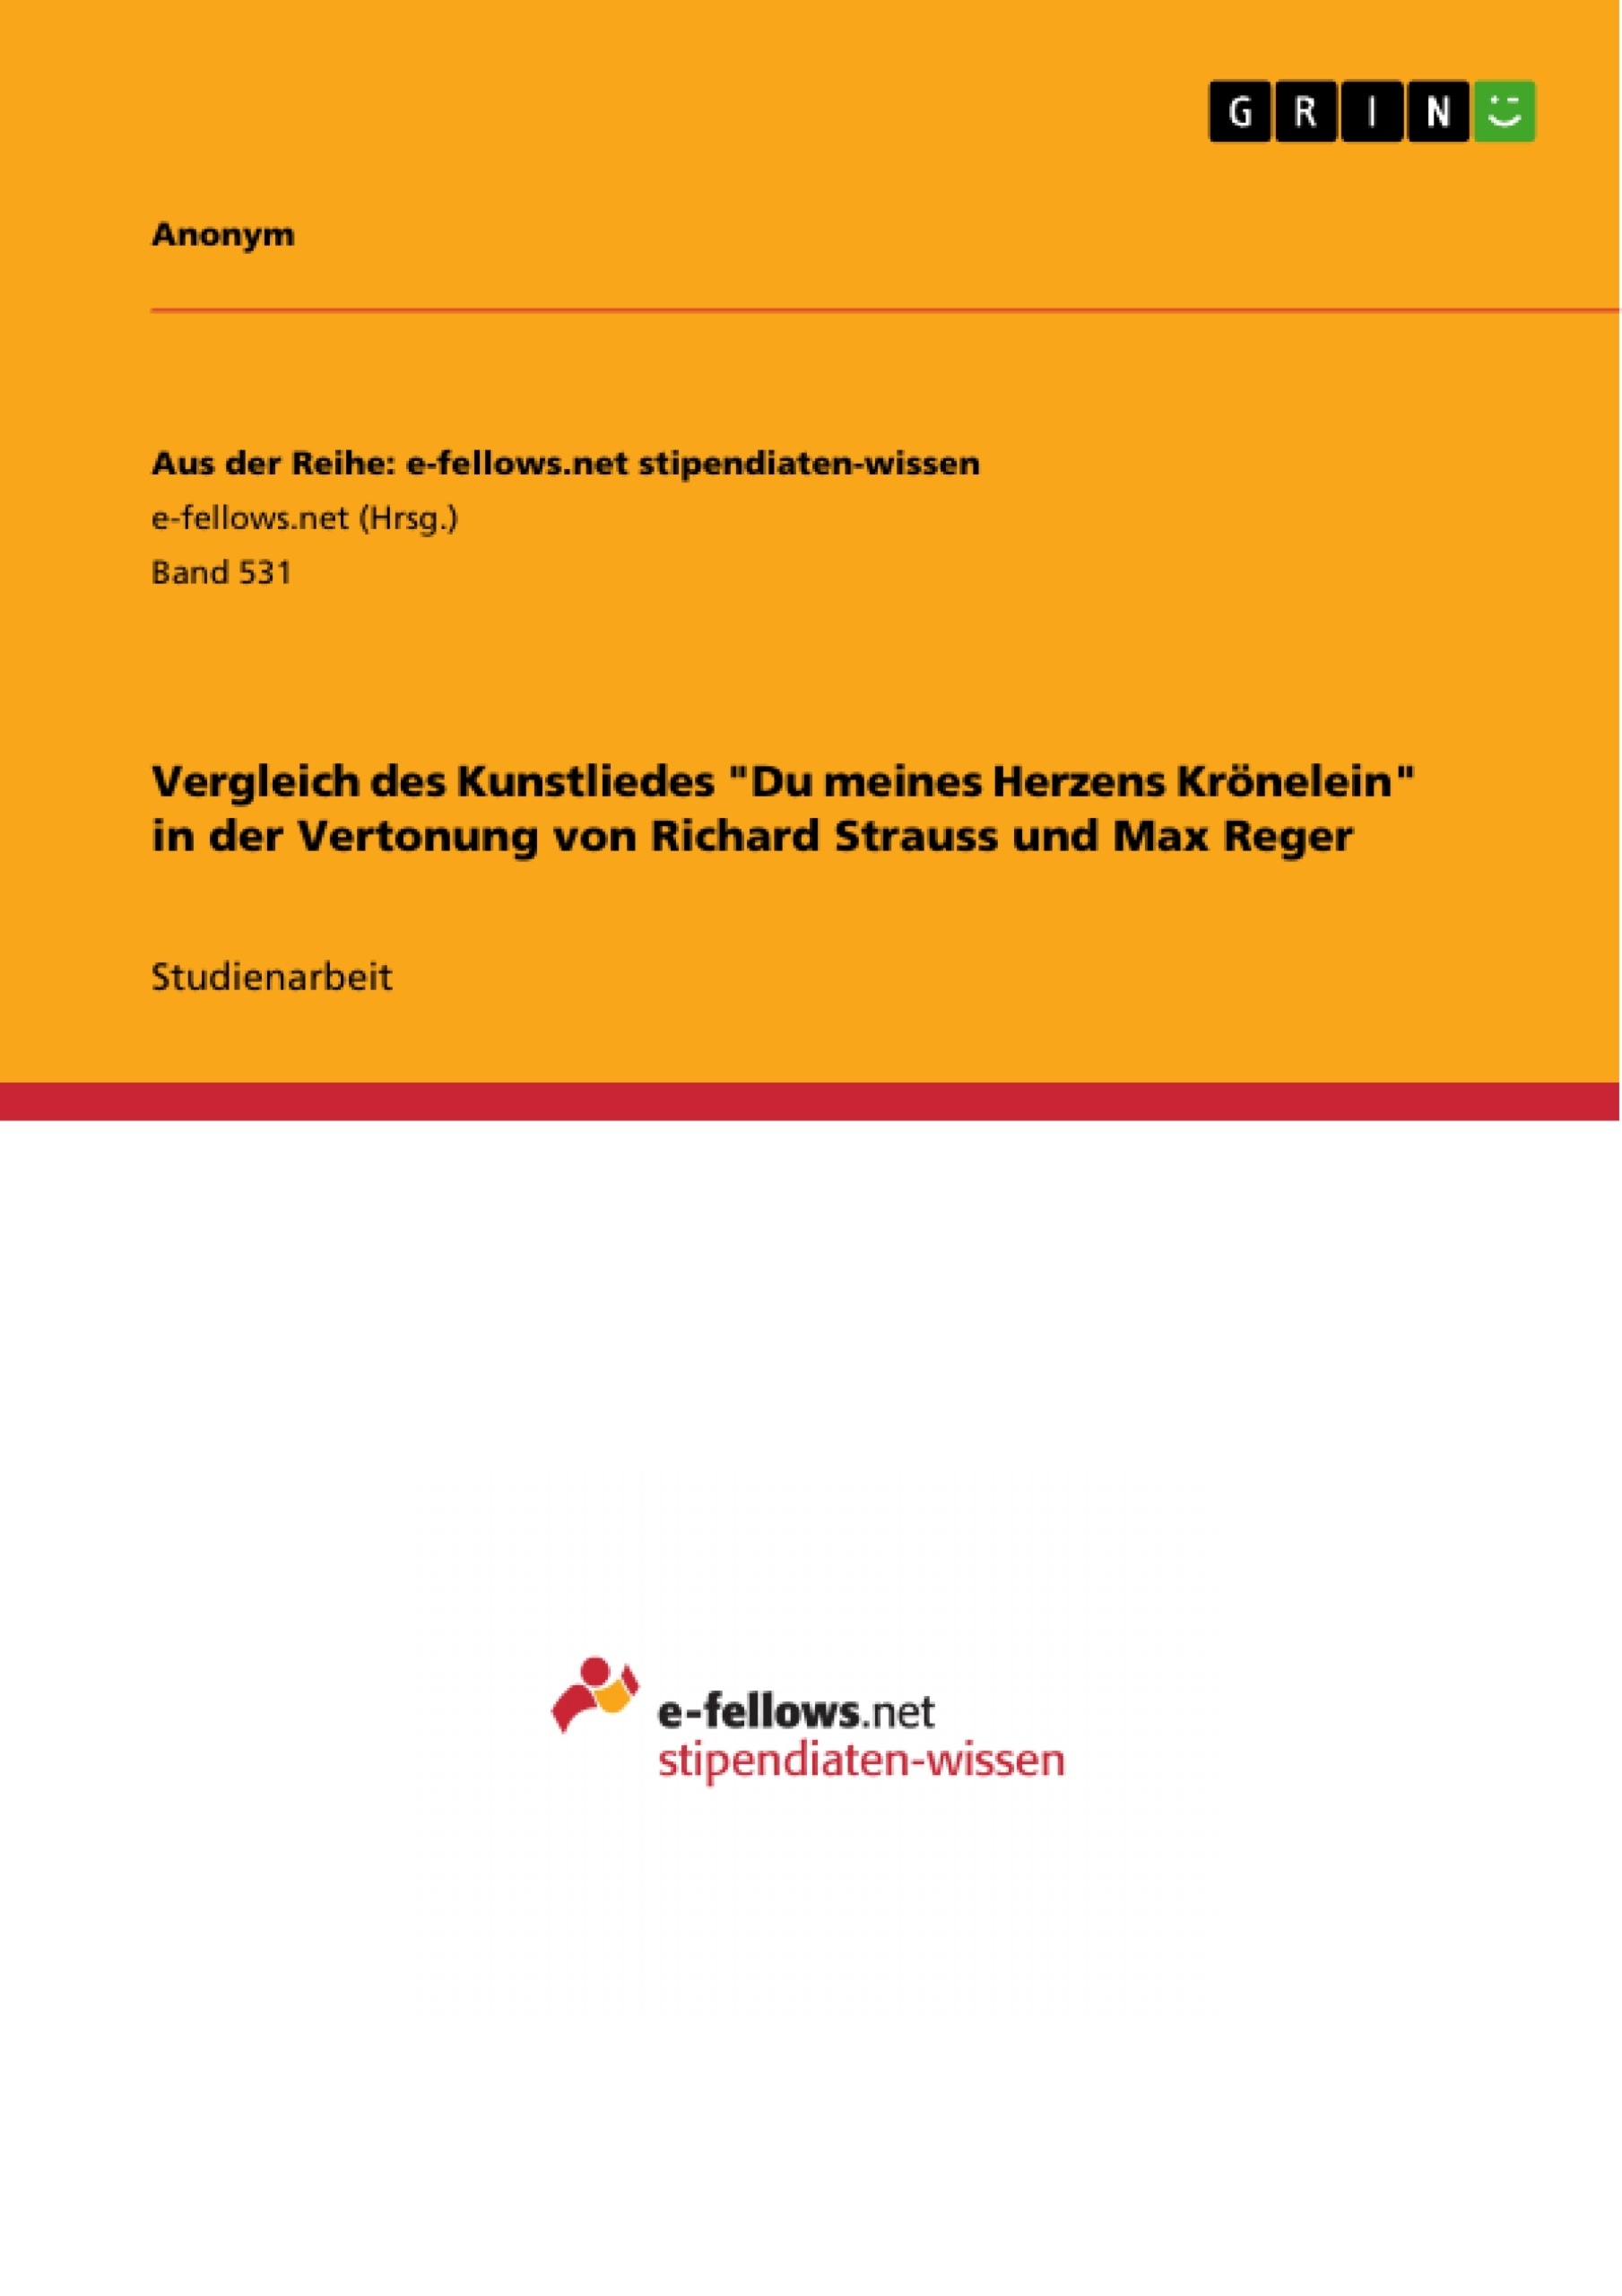 Title: Vergleich des Kunstliedes "Du meines Herzens Krönelein" in der Vertonung von Richard Strauss und Max Reger